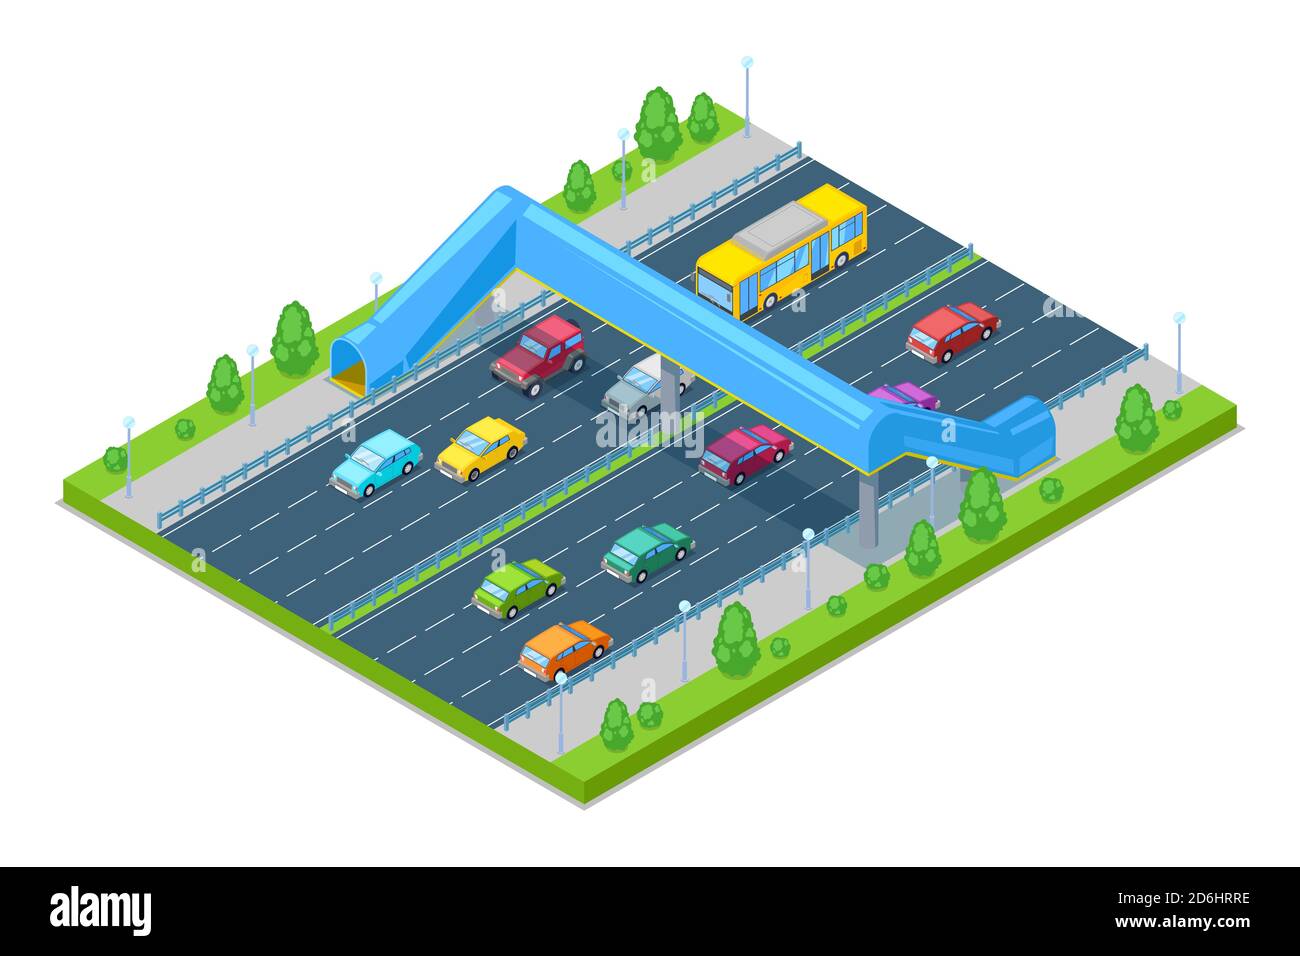 Autobahn und Fußgängerbrücke für Menschen über der Straße. Vektor-isometrische 3D-Illustration. Sicherheitsüberführung, Transport, moderner Straßenbau und jun Stock Vektor